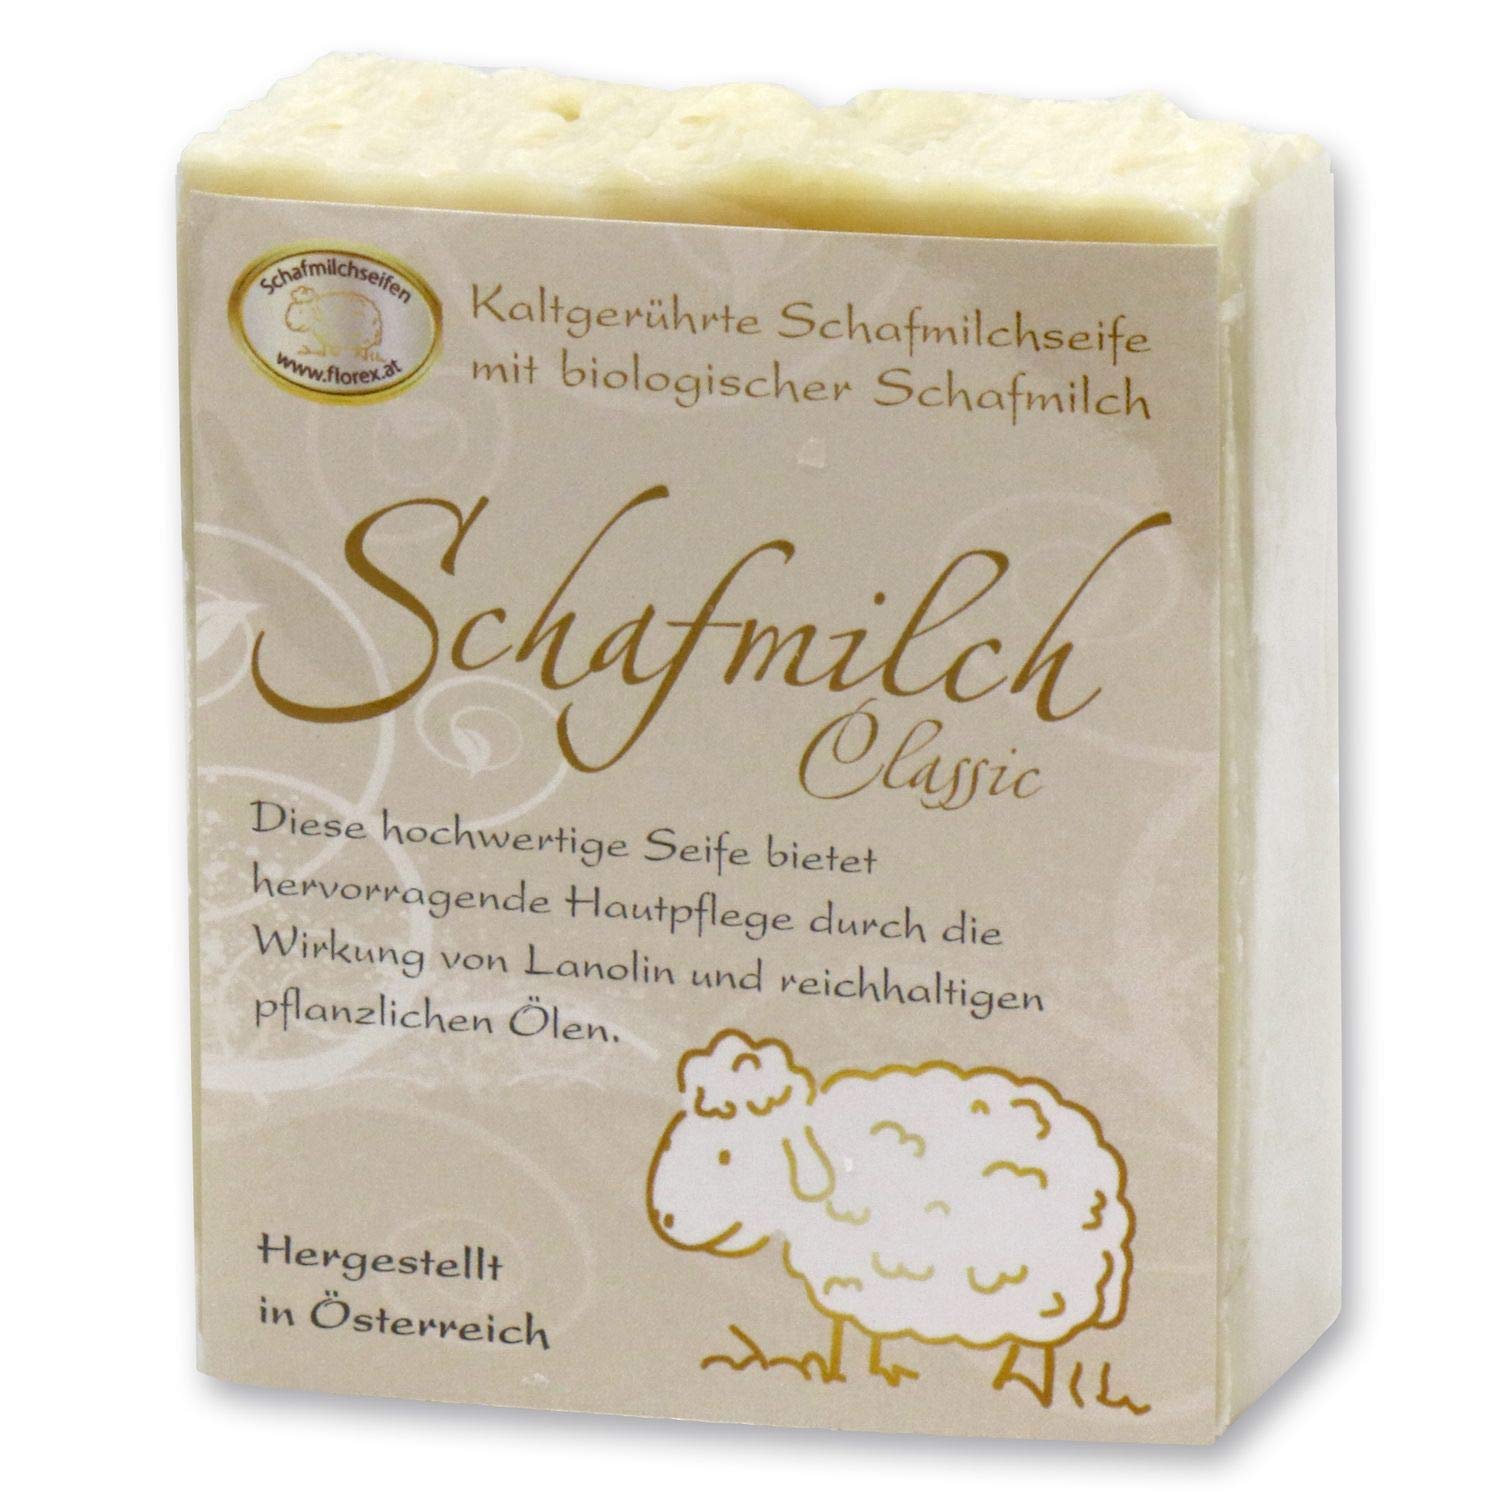 Florex Kaltgerührte Schafmilchseife - Classic - mit Lanolin für hervorragende Hautpflege mit reichhaltigen Ölen 150 g 9301KC